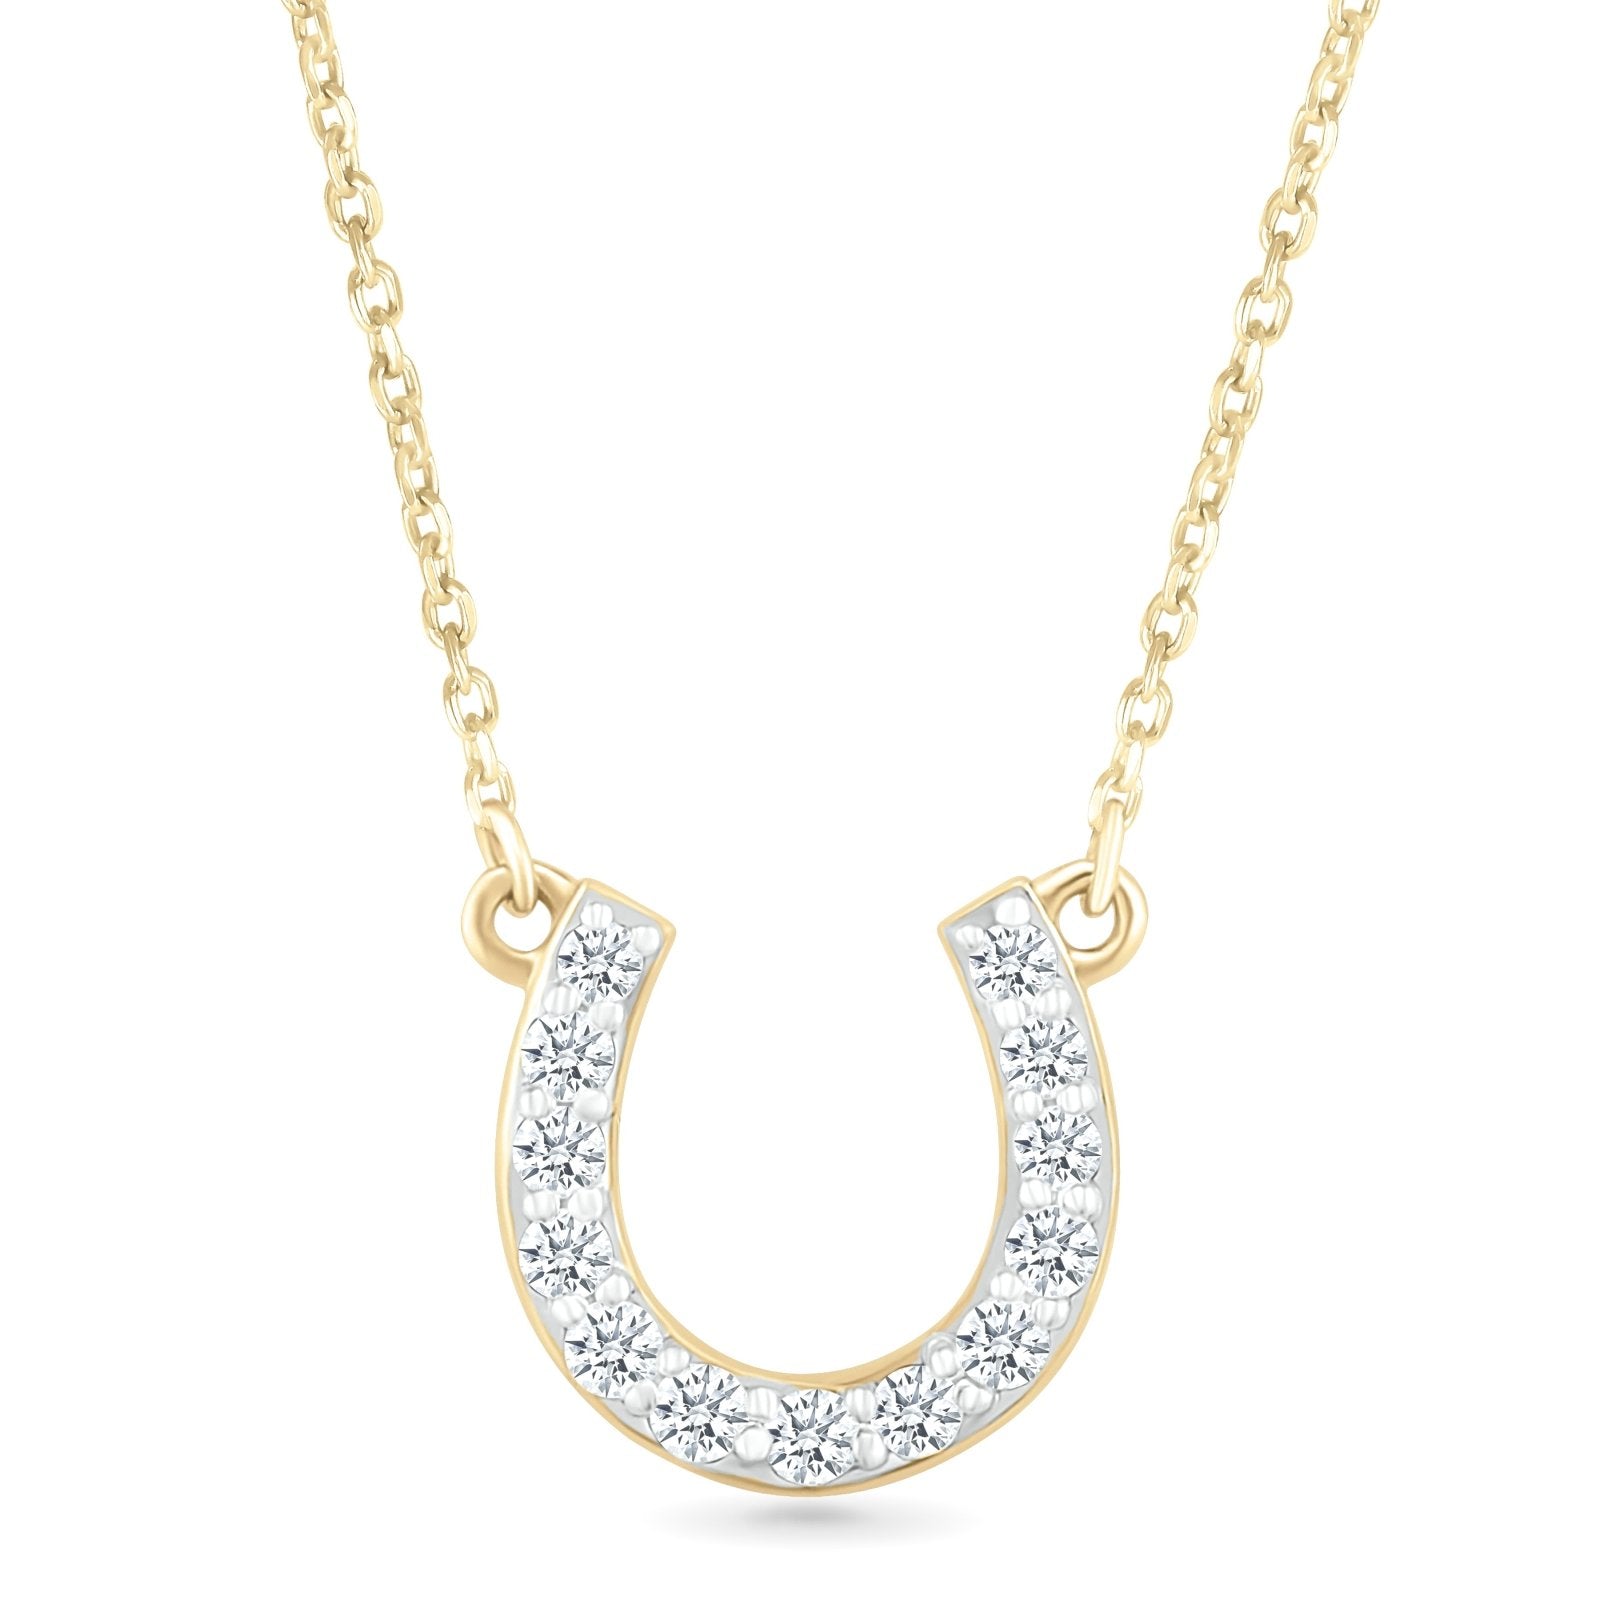 Diamond Horseshoe Pendant Necklace Necklaces Estella Collection #product_description# 32704 10k April Birthstone Colorless Gemstone #tag4# #tag5# #tag6# #tag7# #tag8# #tag9# #tag10#